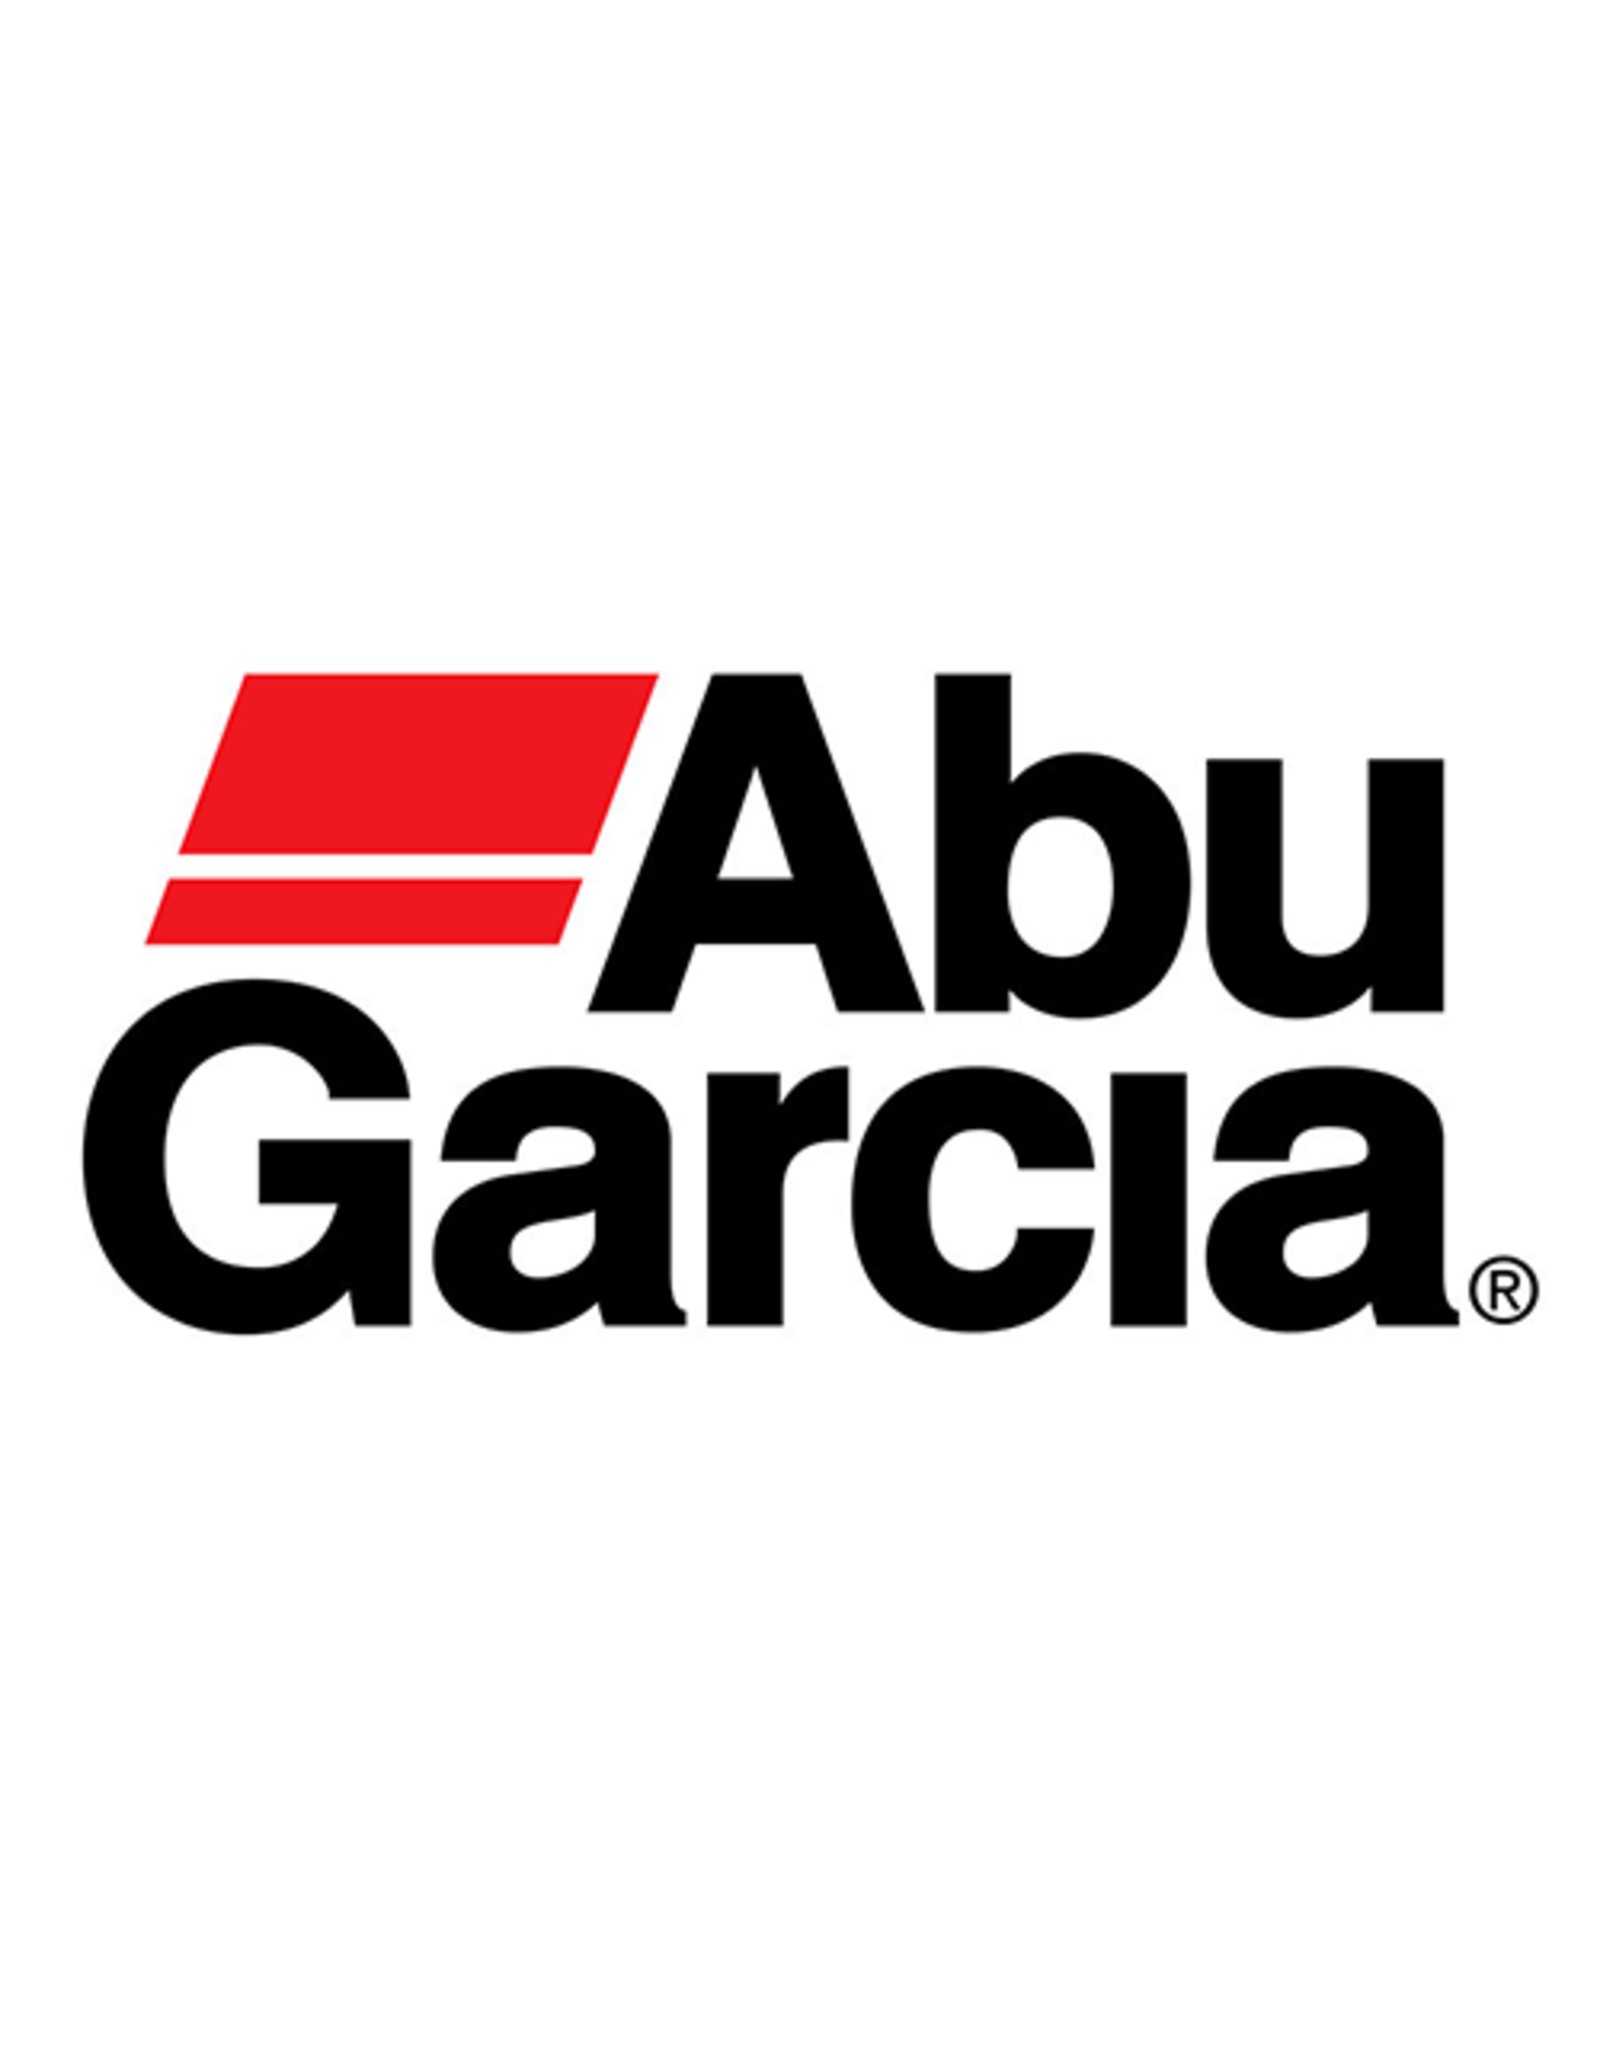 Abu Garcia 1448516  BAIL ARM